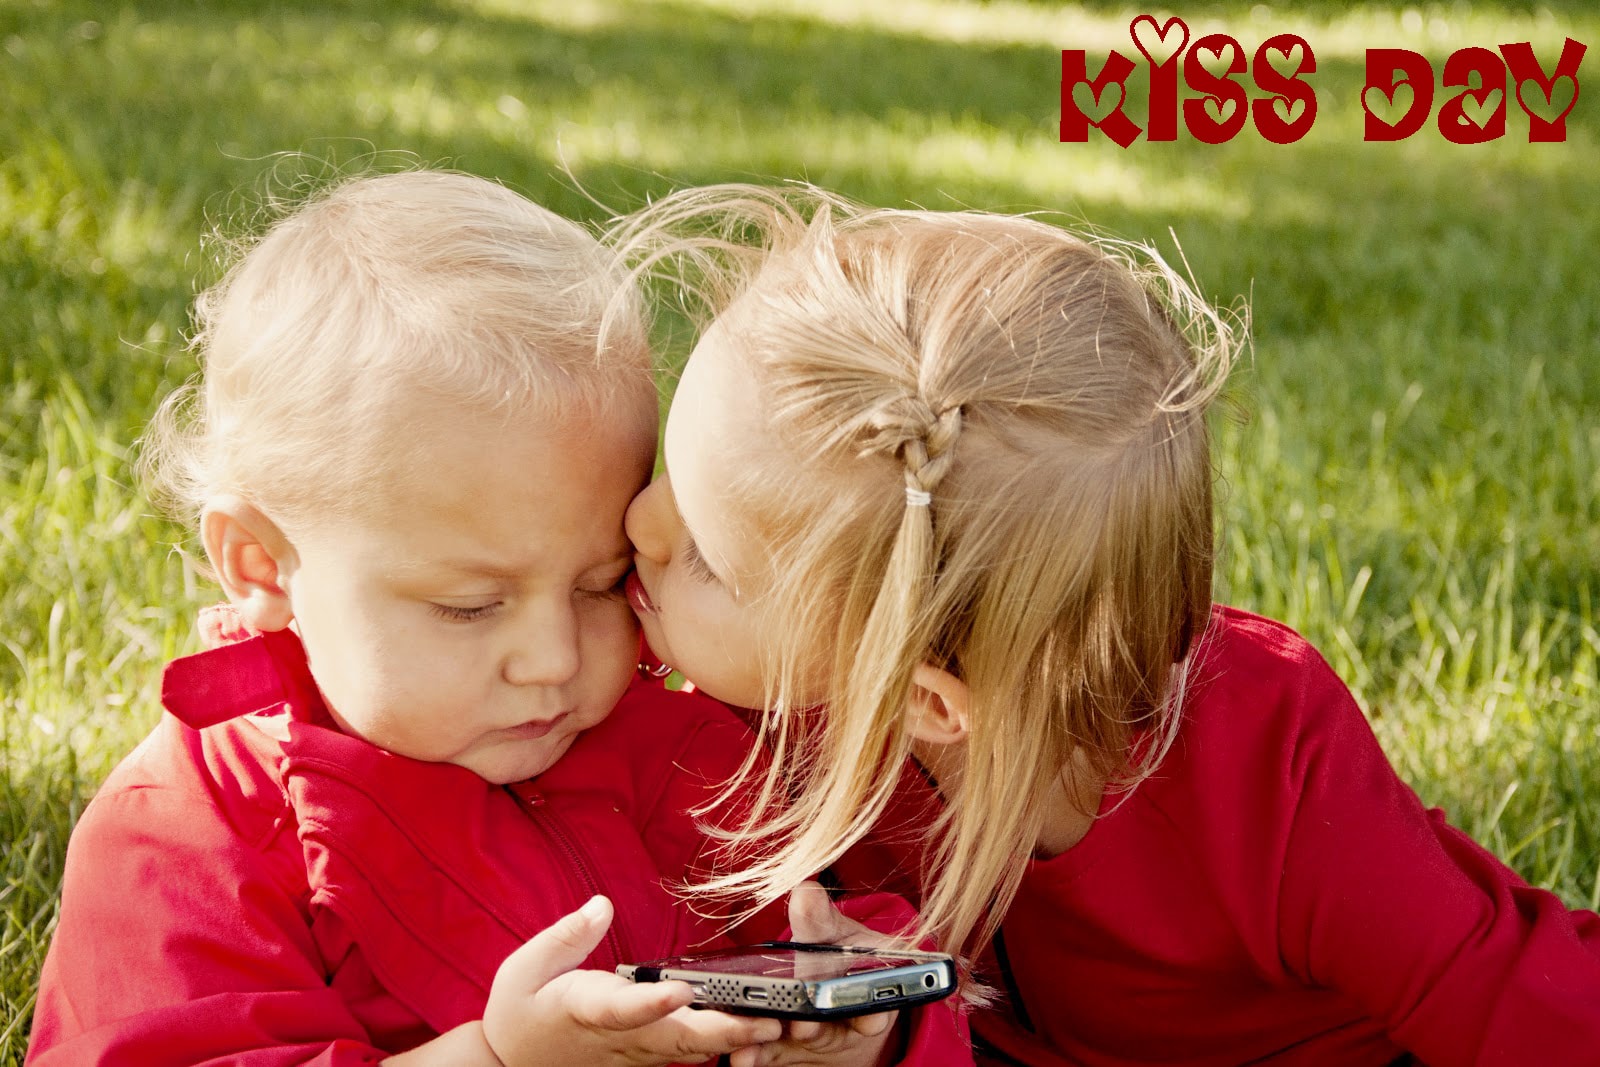 feliz beso día hermosos fondos de pantalla,niño,niñito,amor,contento,jugar